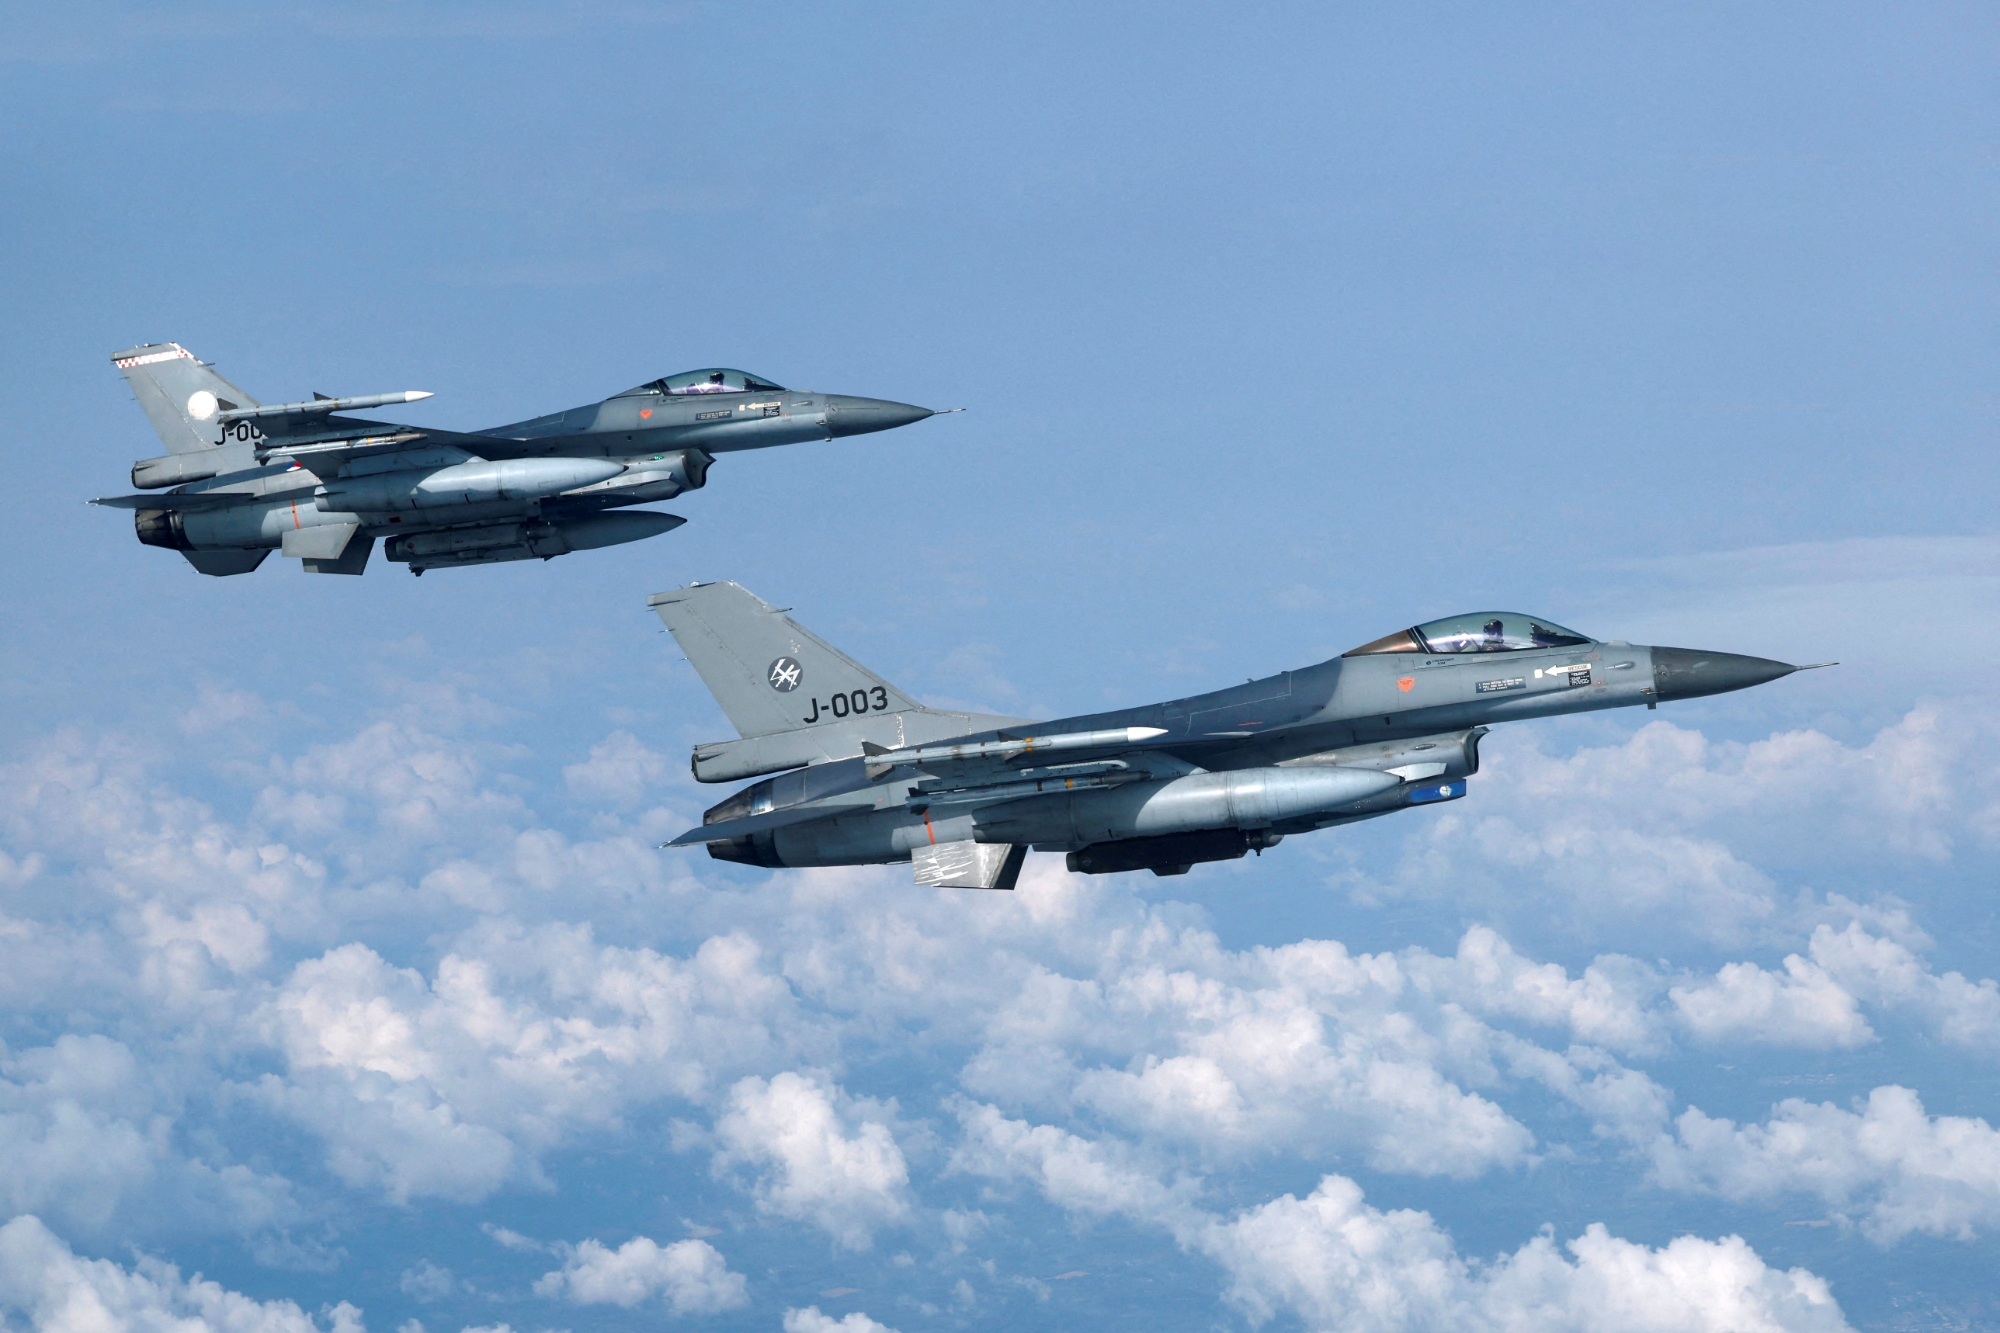 Офіційно: Нідерланди передадуть Україні ще 6 додаткових винищувачів F-16 Fighting Falcon